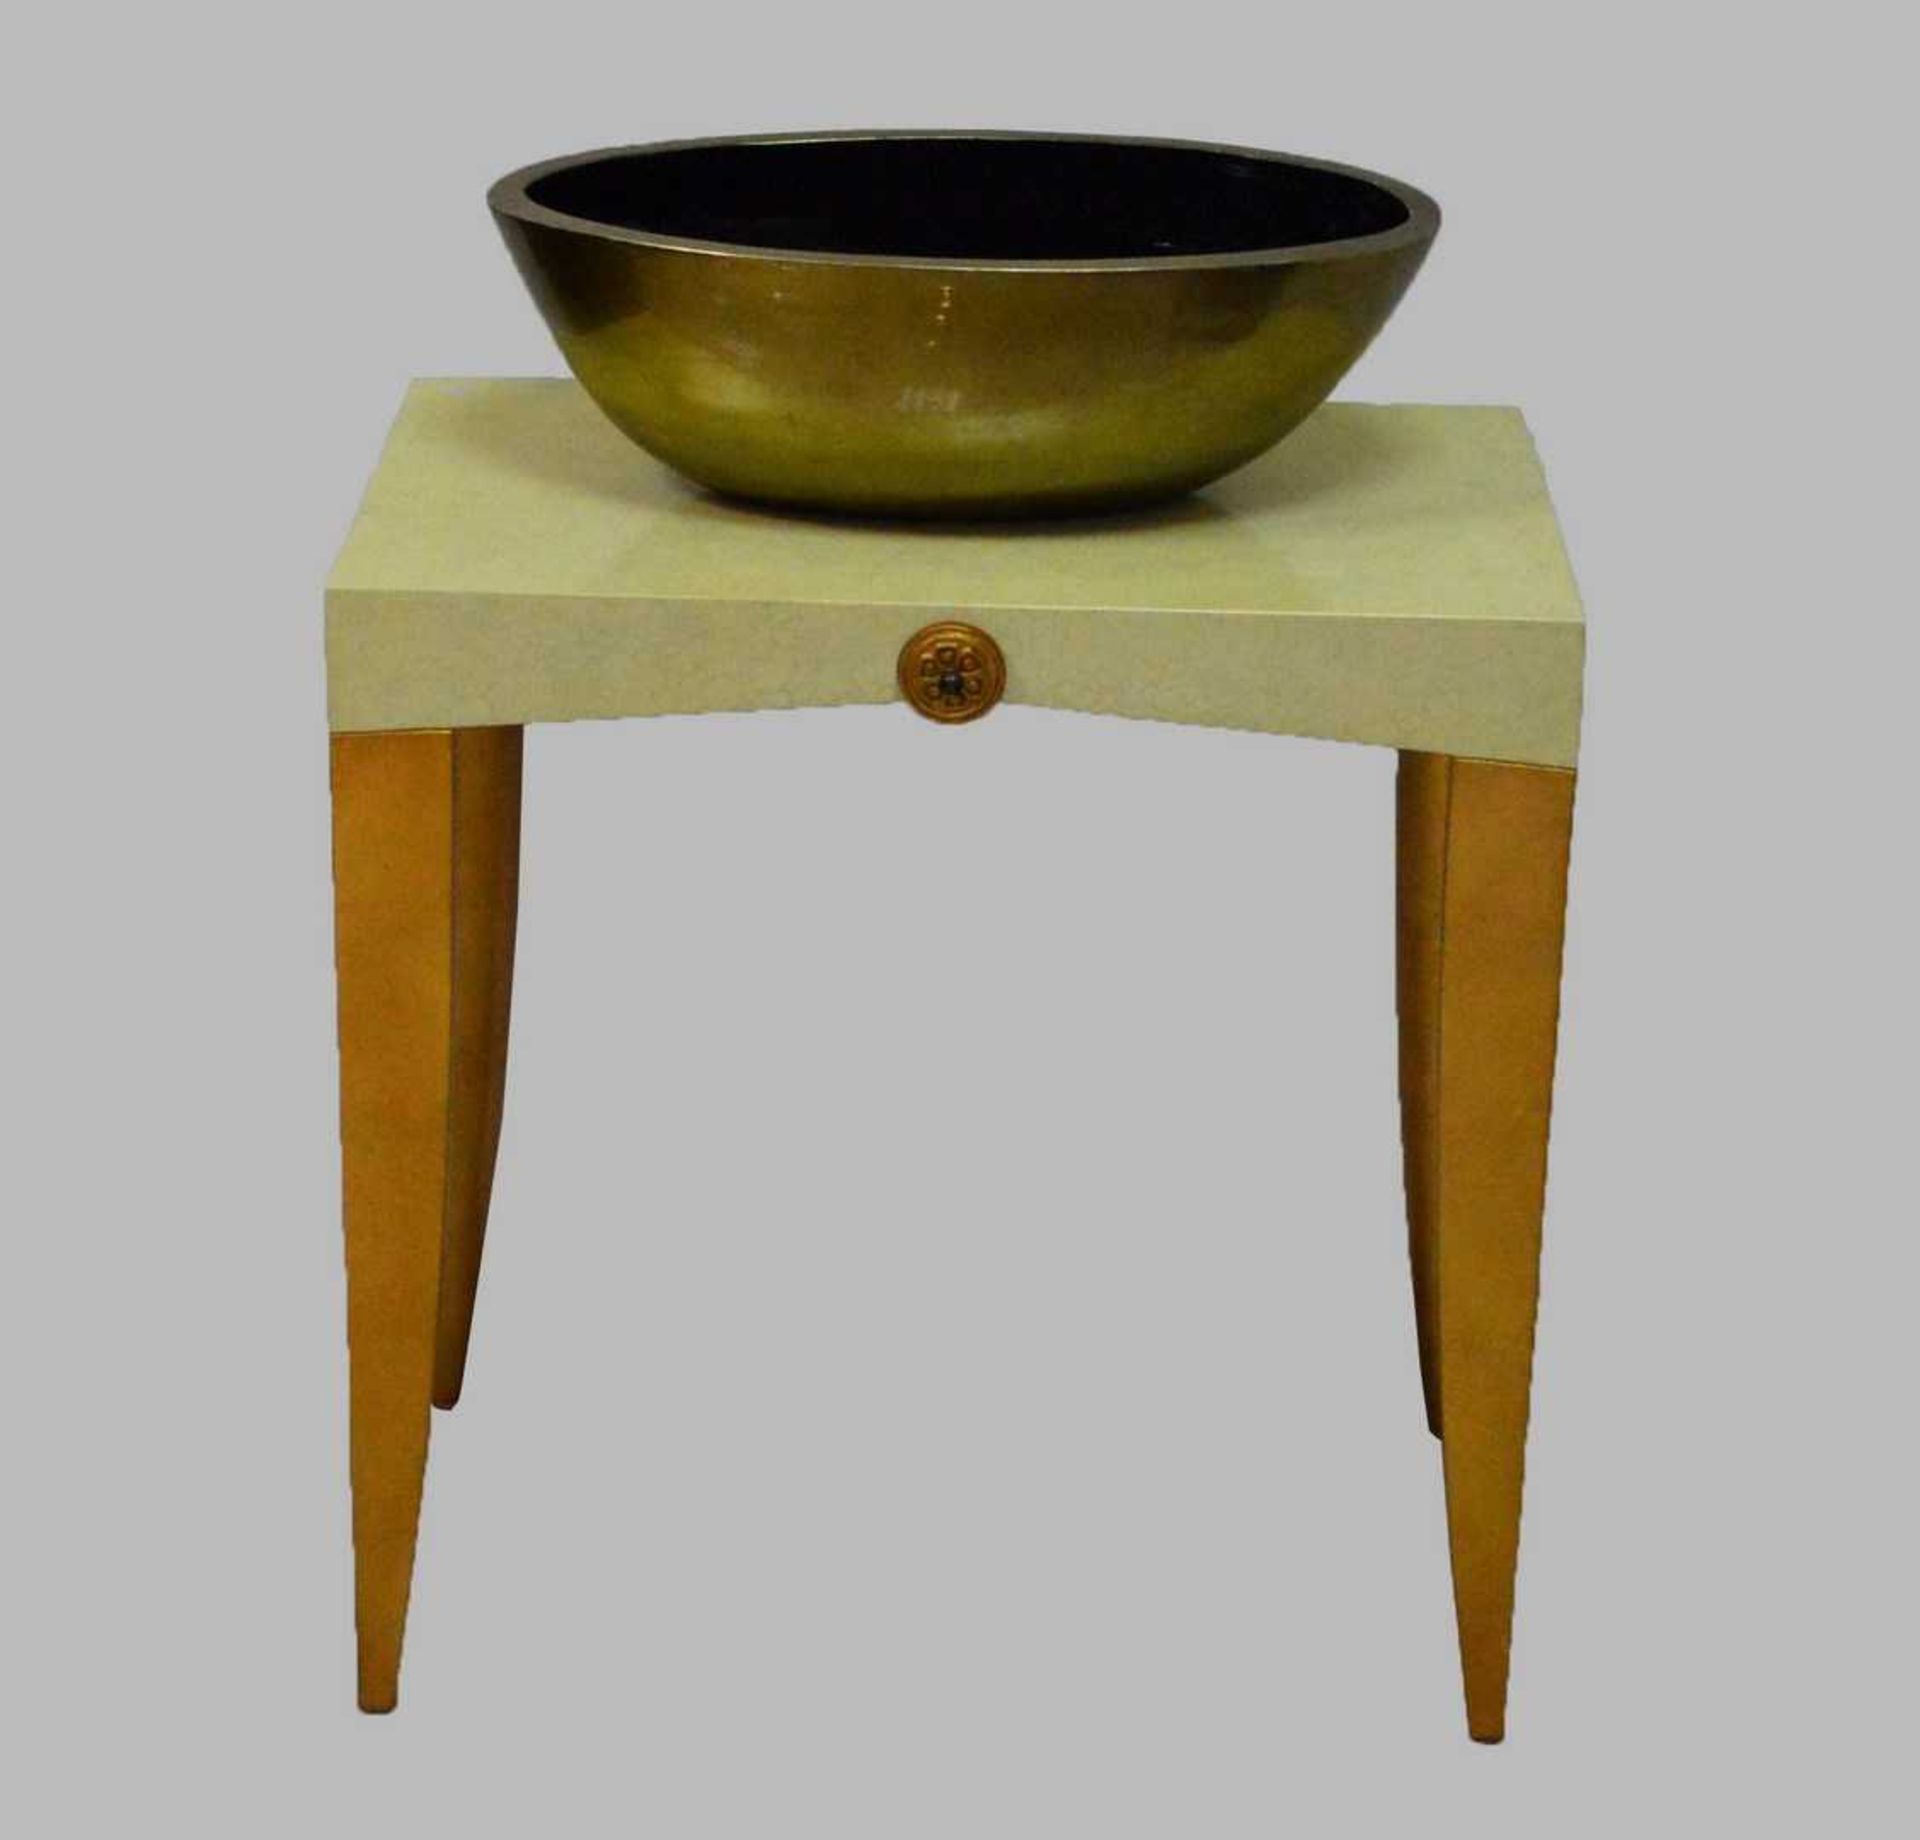 Tisch und Schale vier nach unten verjüngende Beine, gold verziert, rechteckige Abdeckplatte in